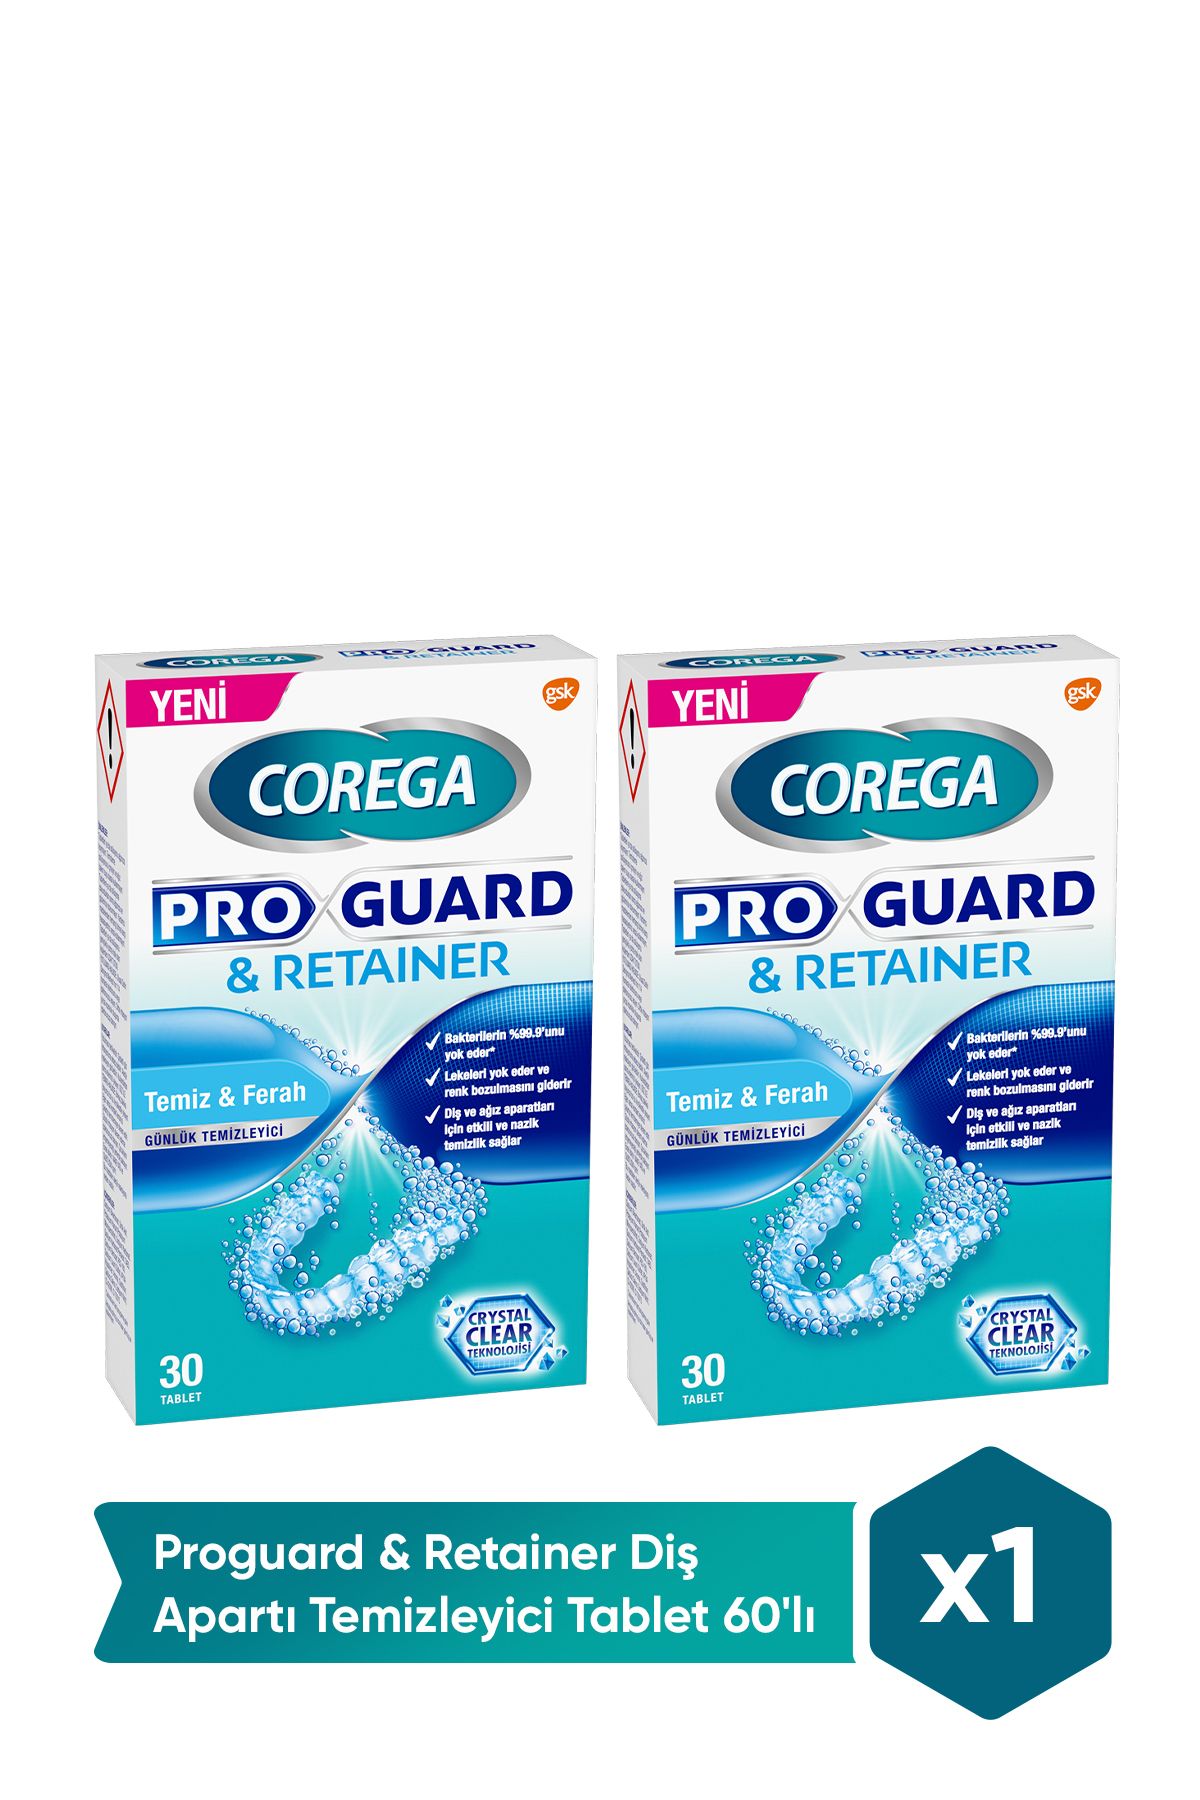 Corega Proguard & Retainer Diş Apartı Temizleyici Tablet 60'lı Cbkshop